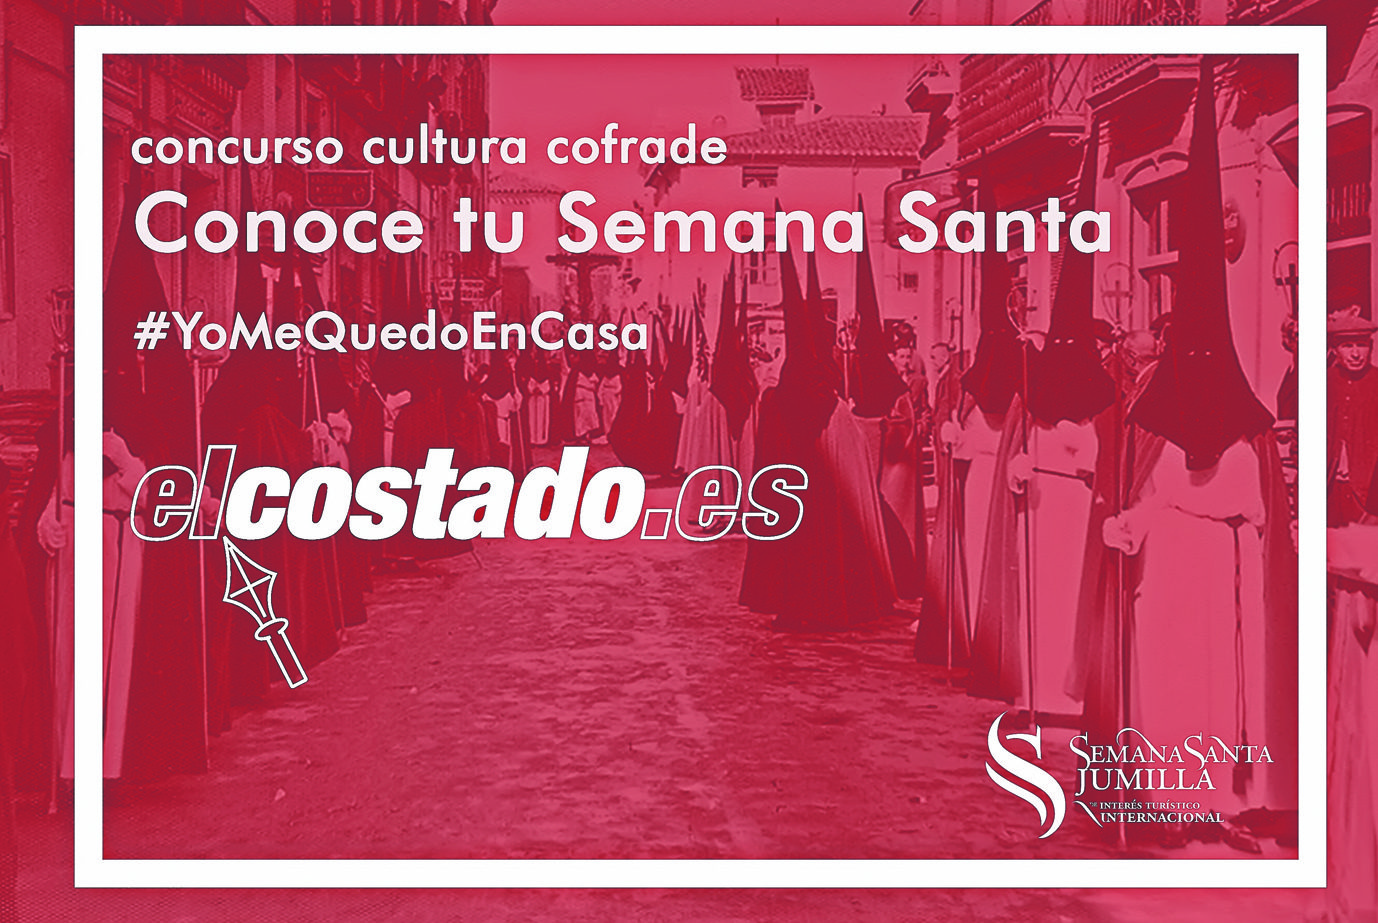 El Santo Costado pone en marcha un concurso on line sobre Semana Santa